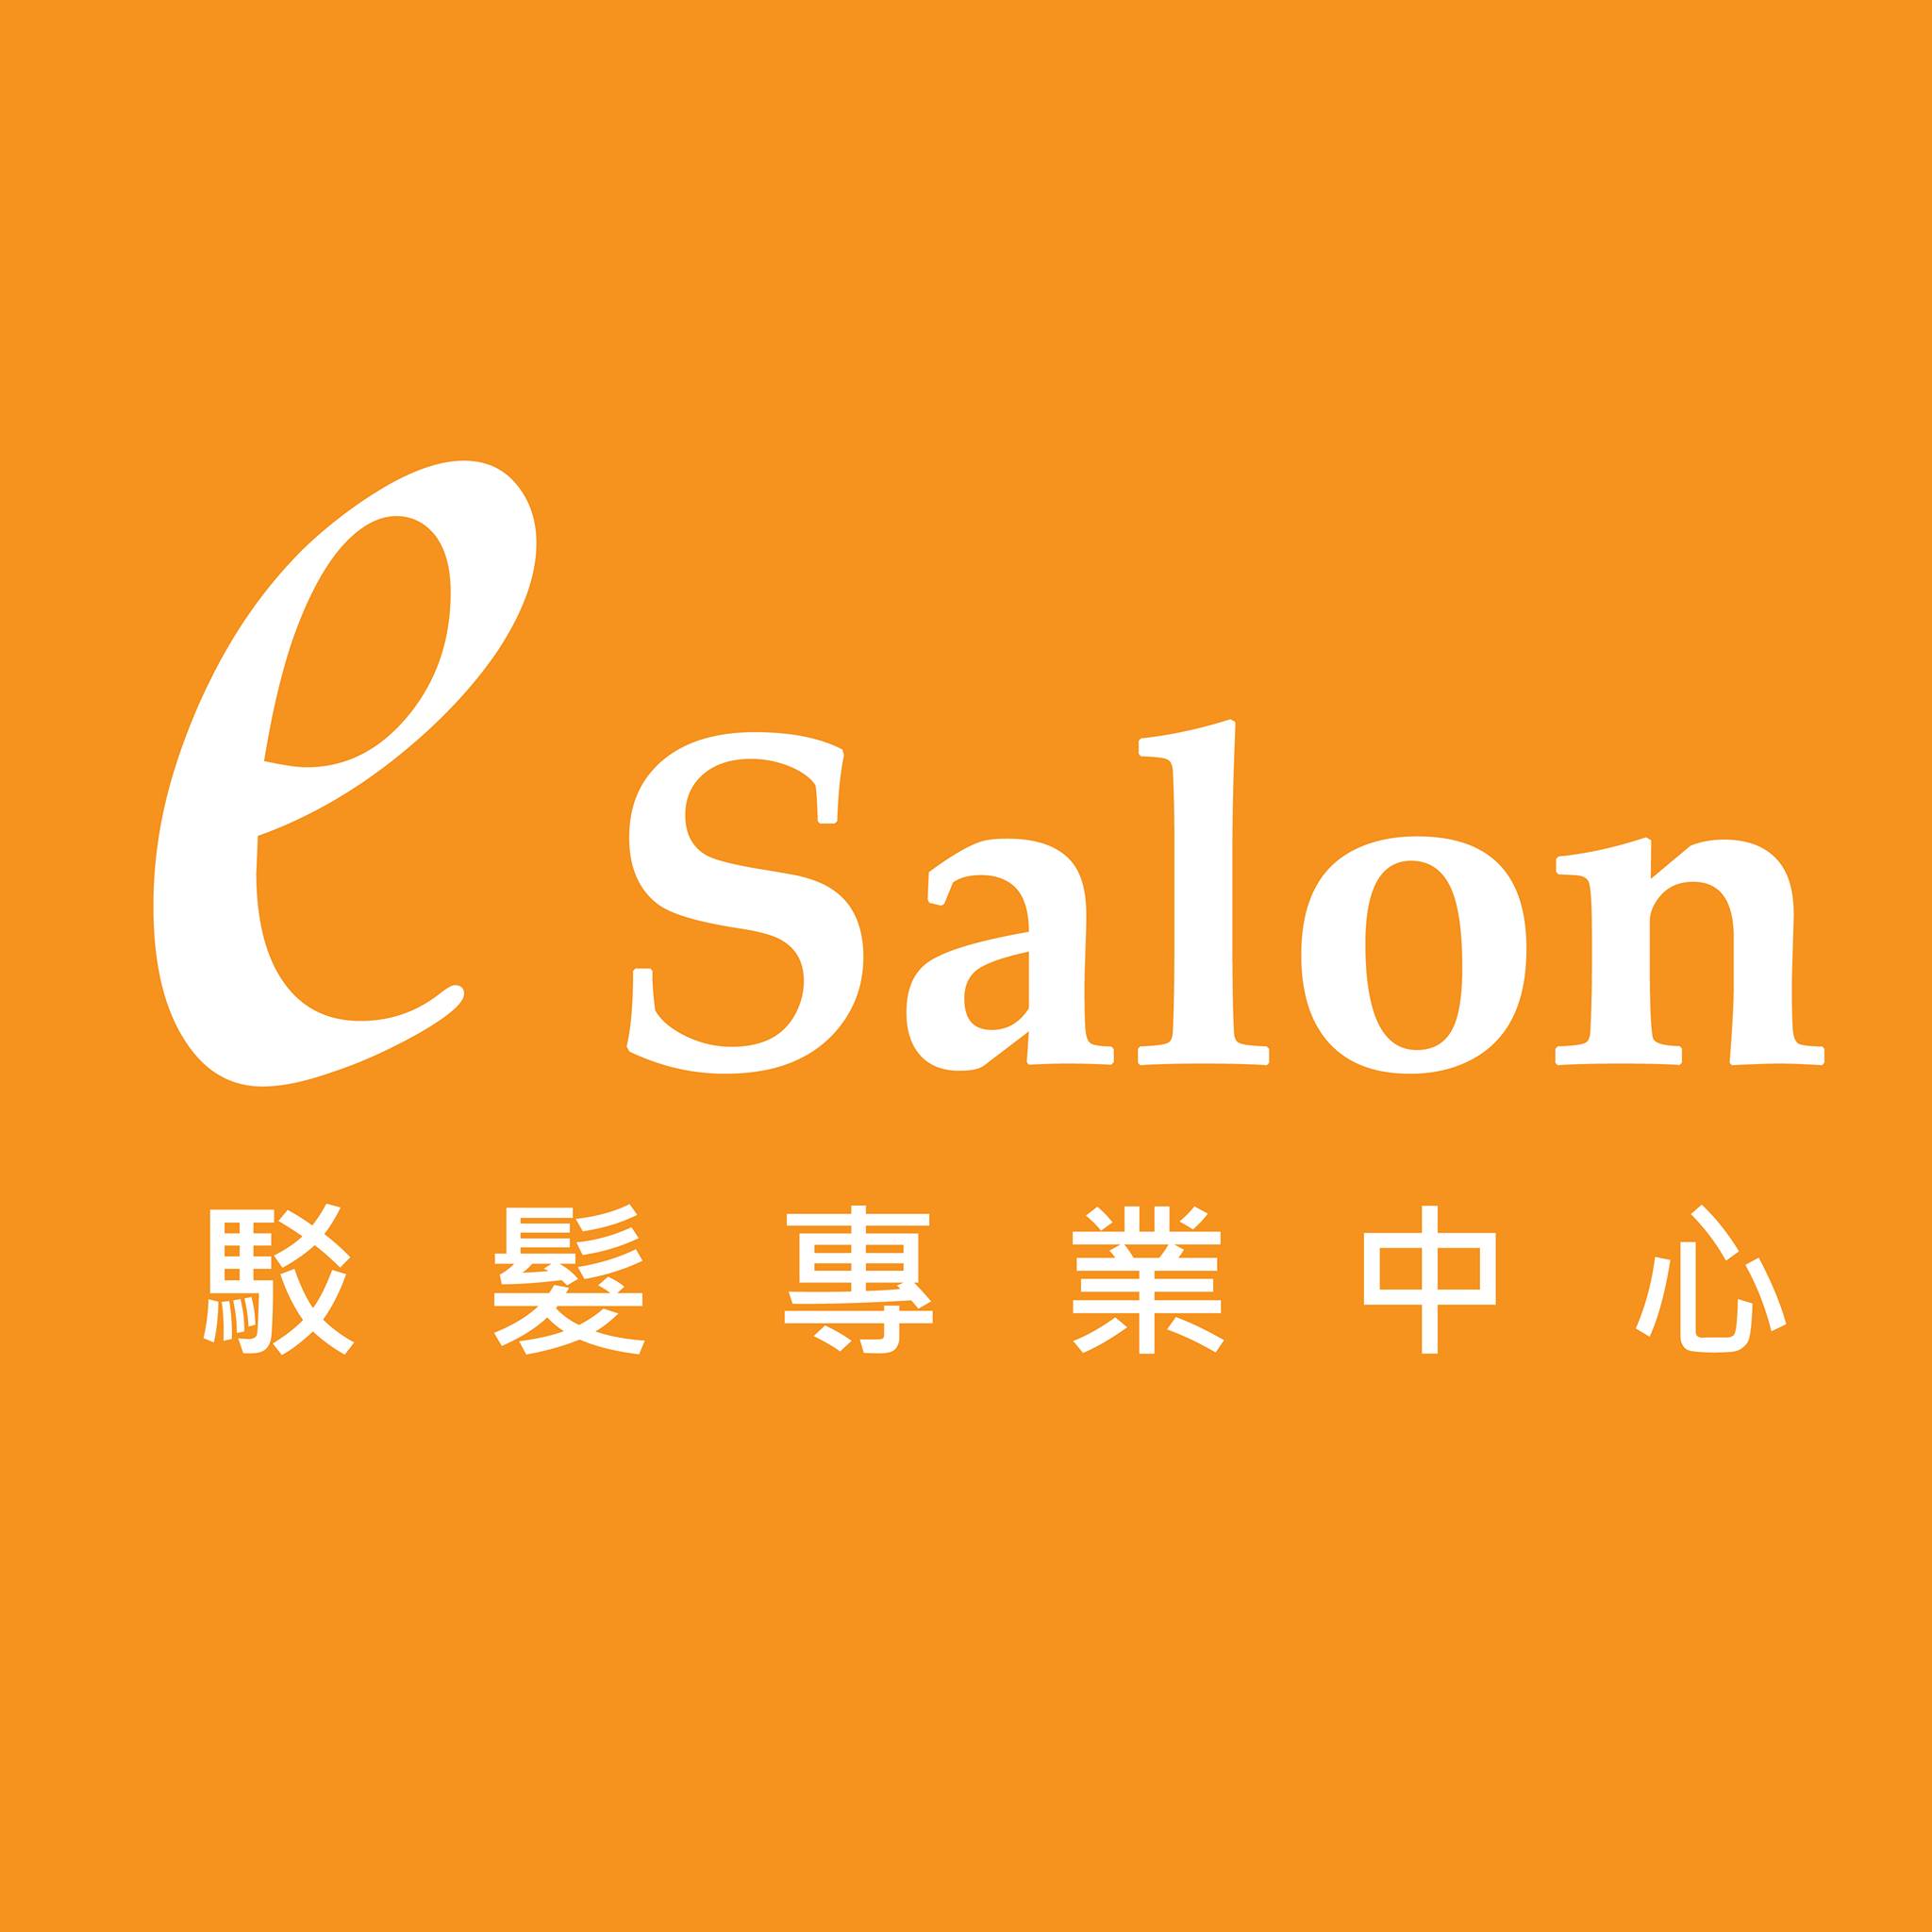 植髮/駁髮: E Salon Station 駁髪專業中心